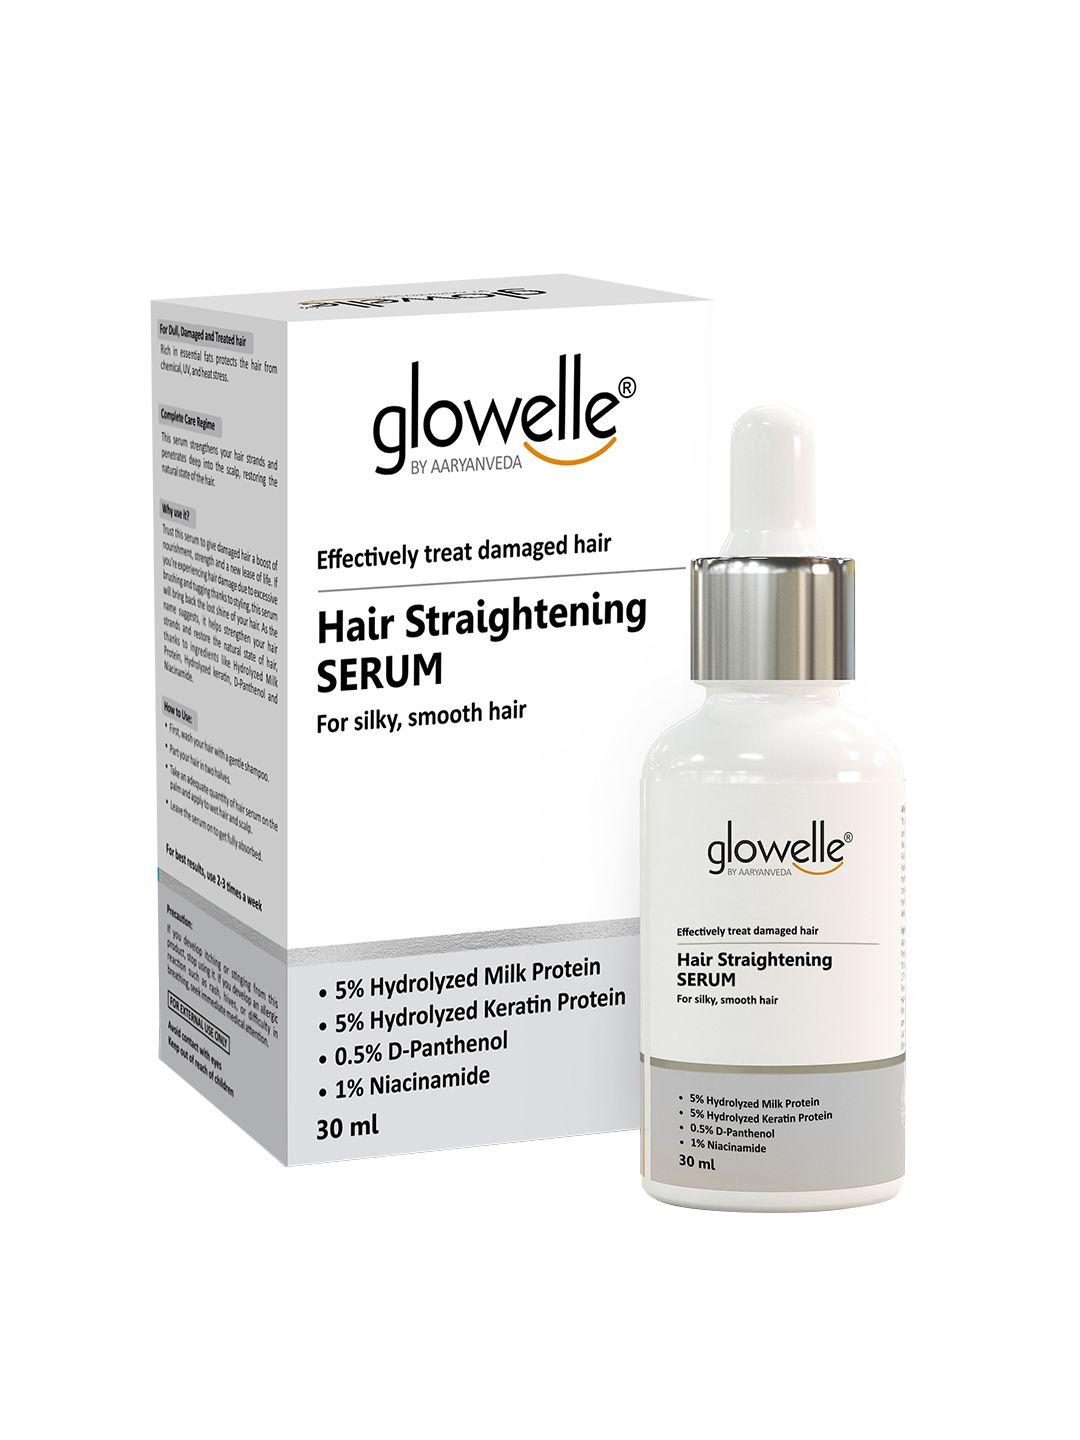 aryanveda glowelle hair straightening serum